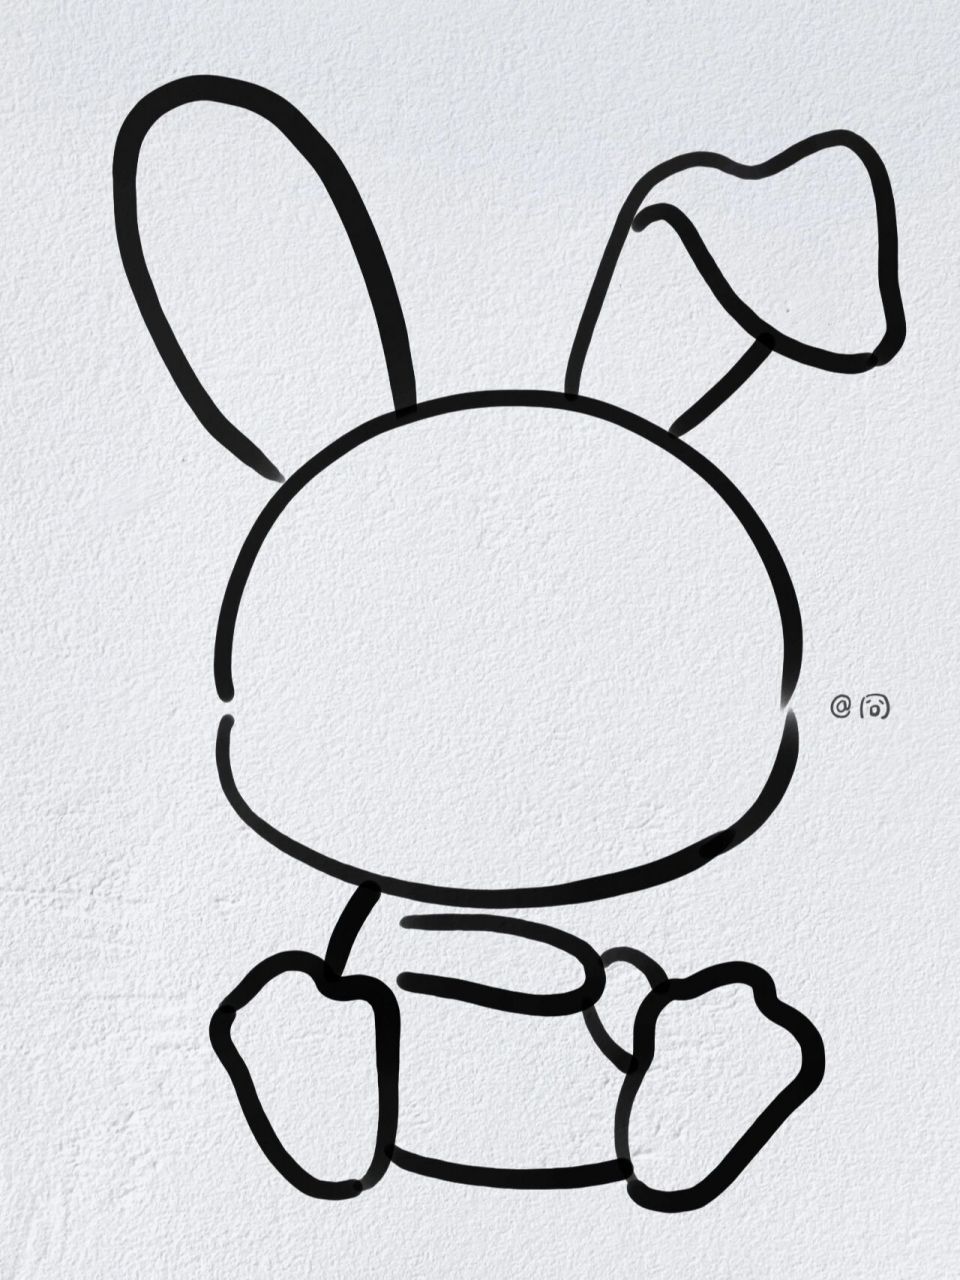 简单的动物简笔画兔子图片